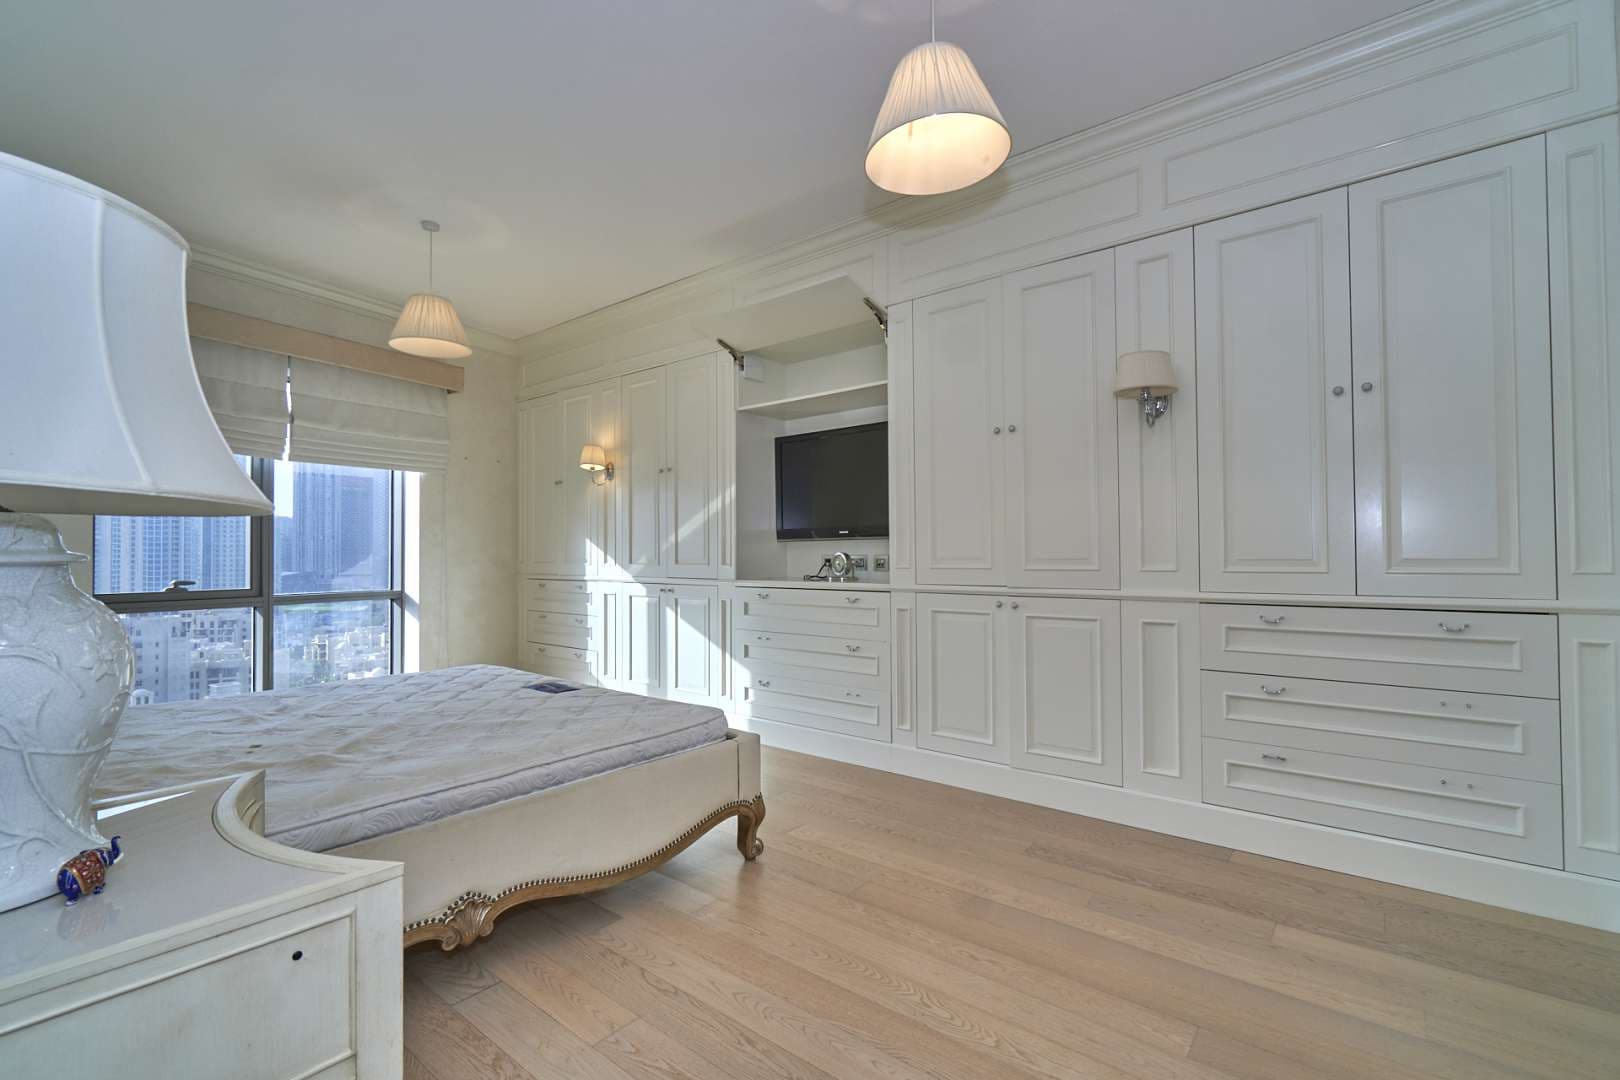 2 Bedroom Apartment For Rent South Ridge Lp08449 8f54a170ea7de80.jpg